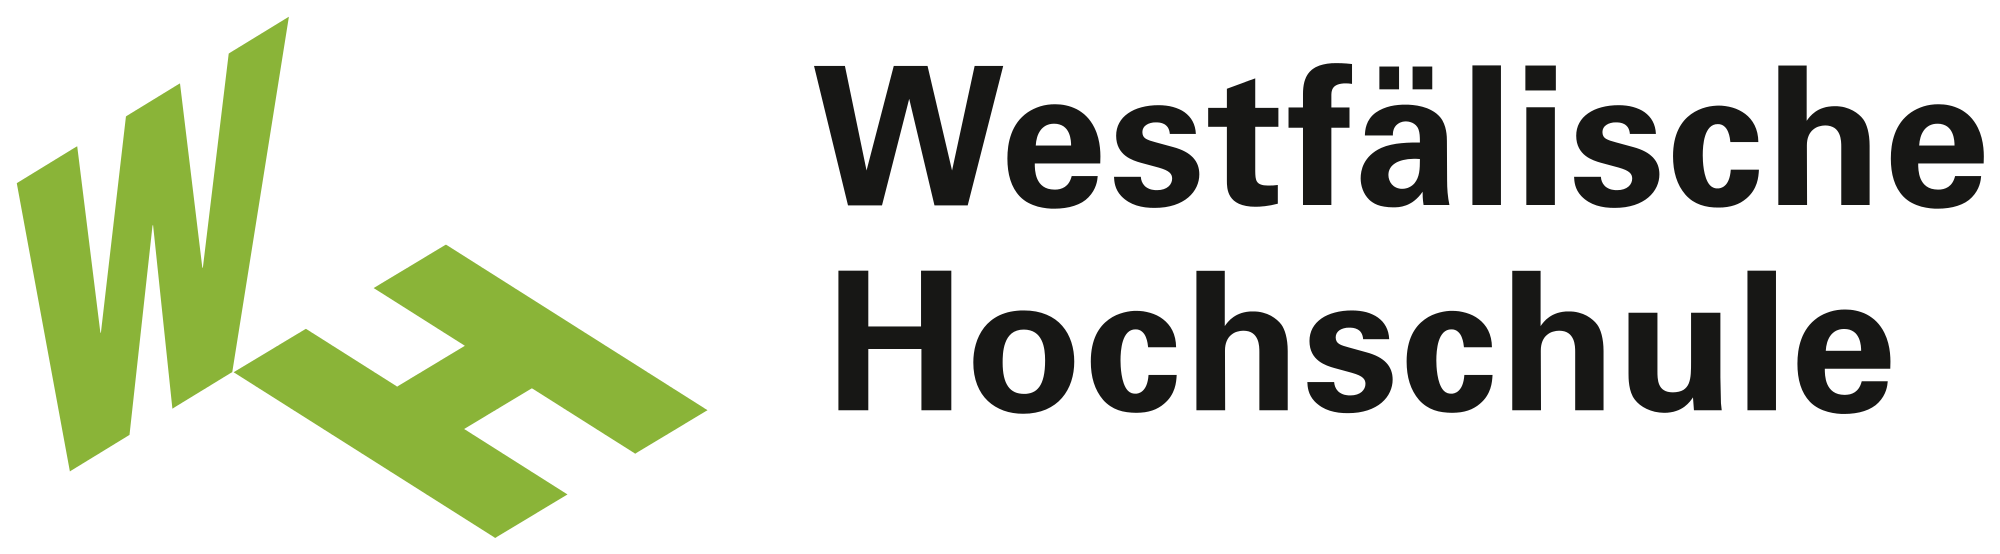 Высшая школа Вестфалии